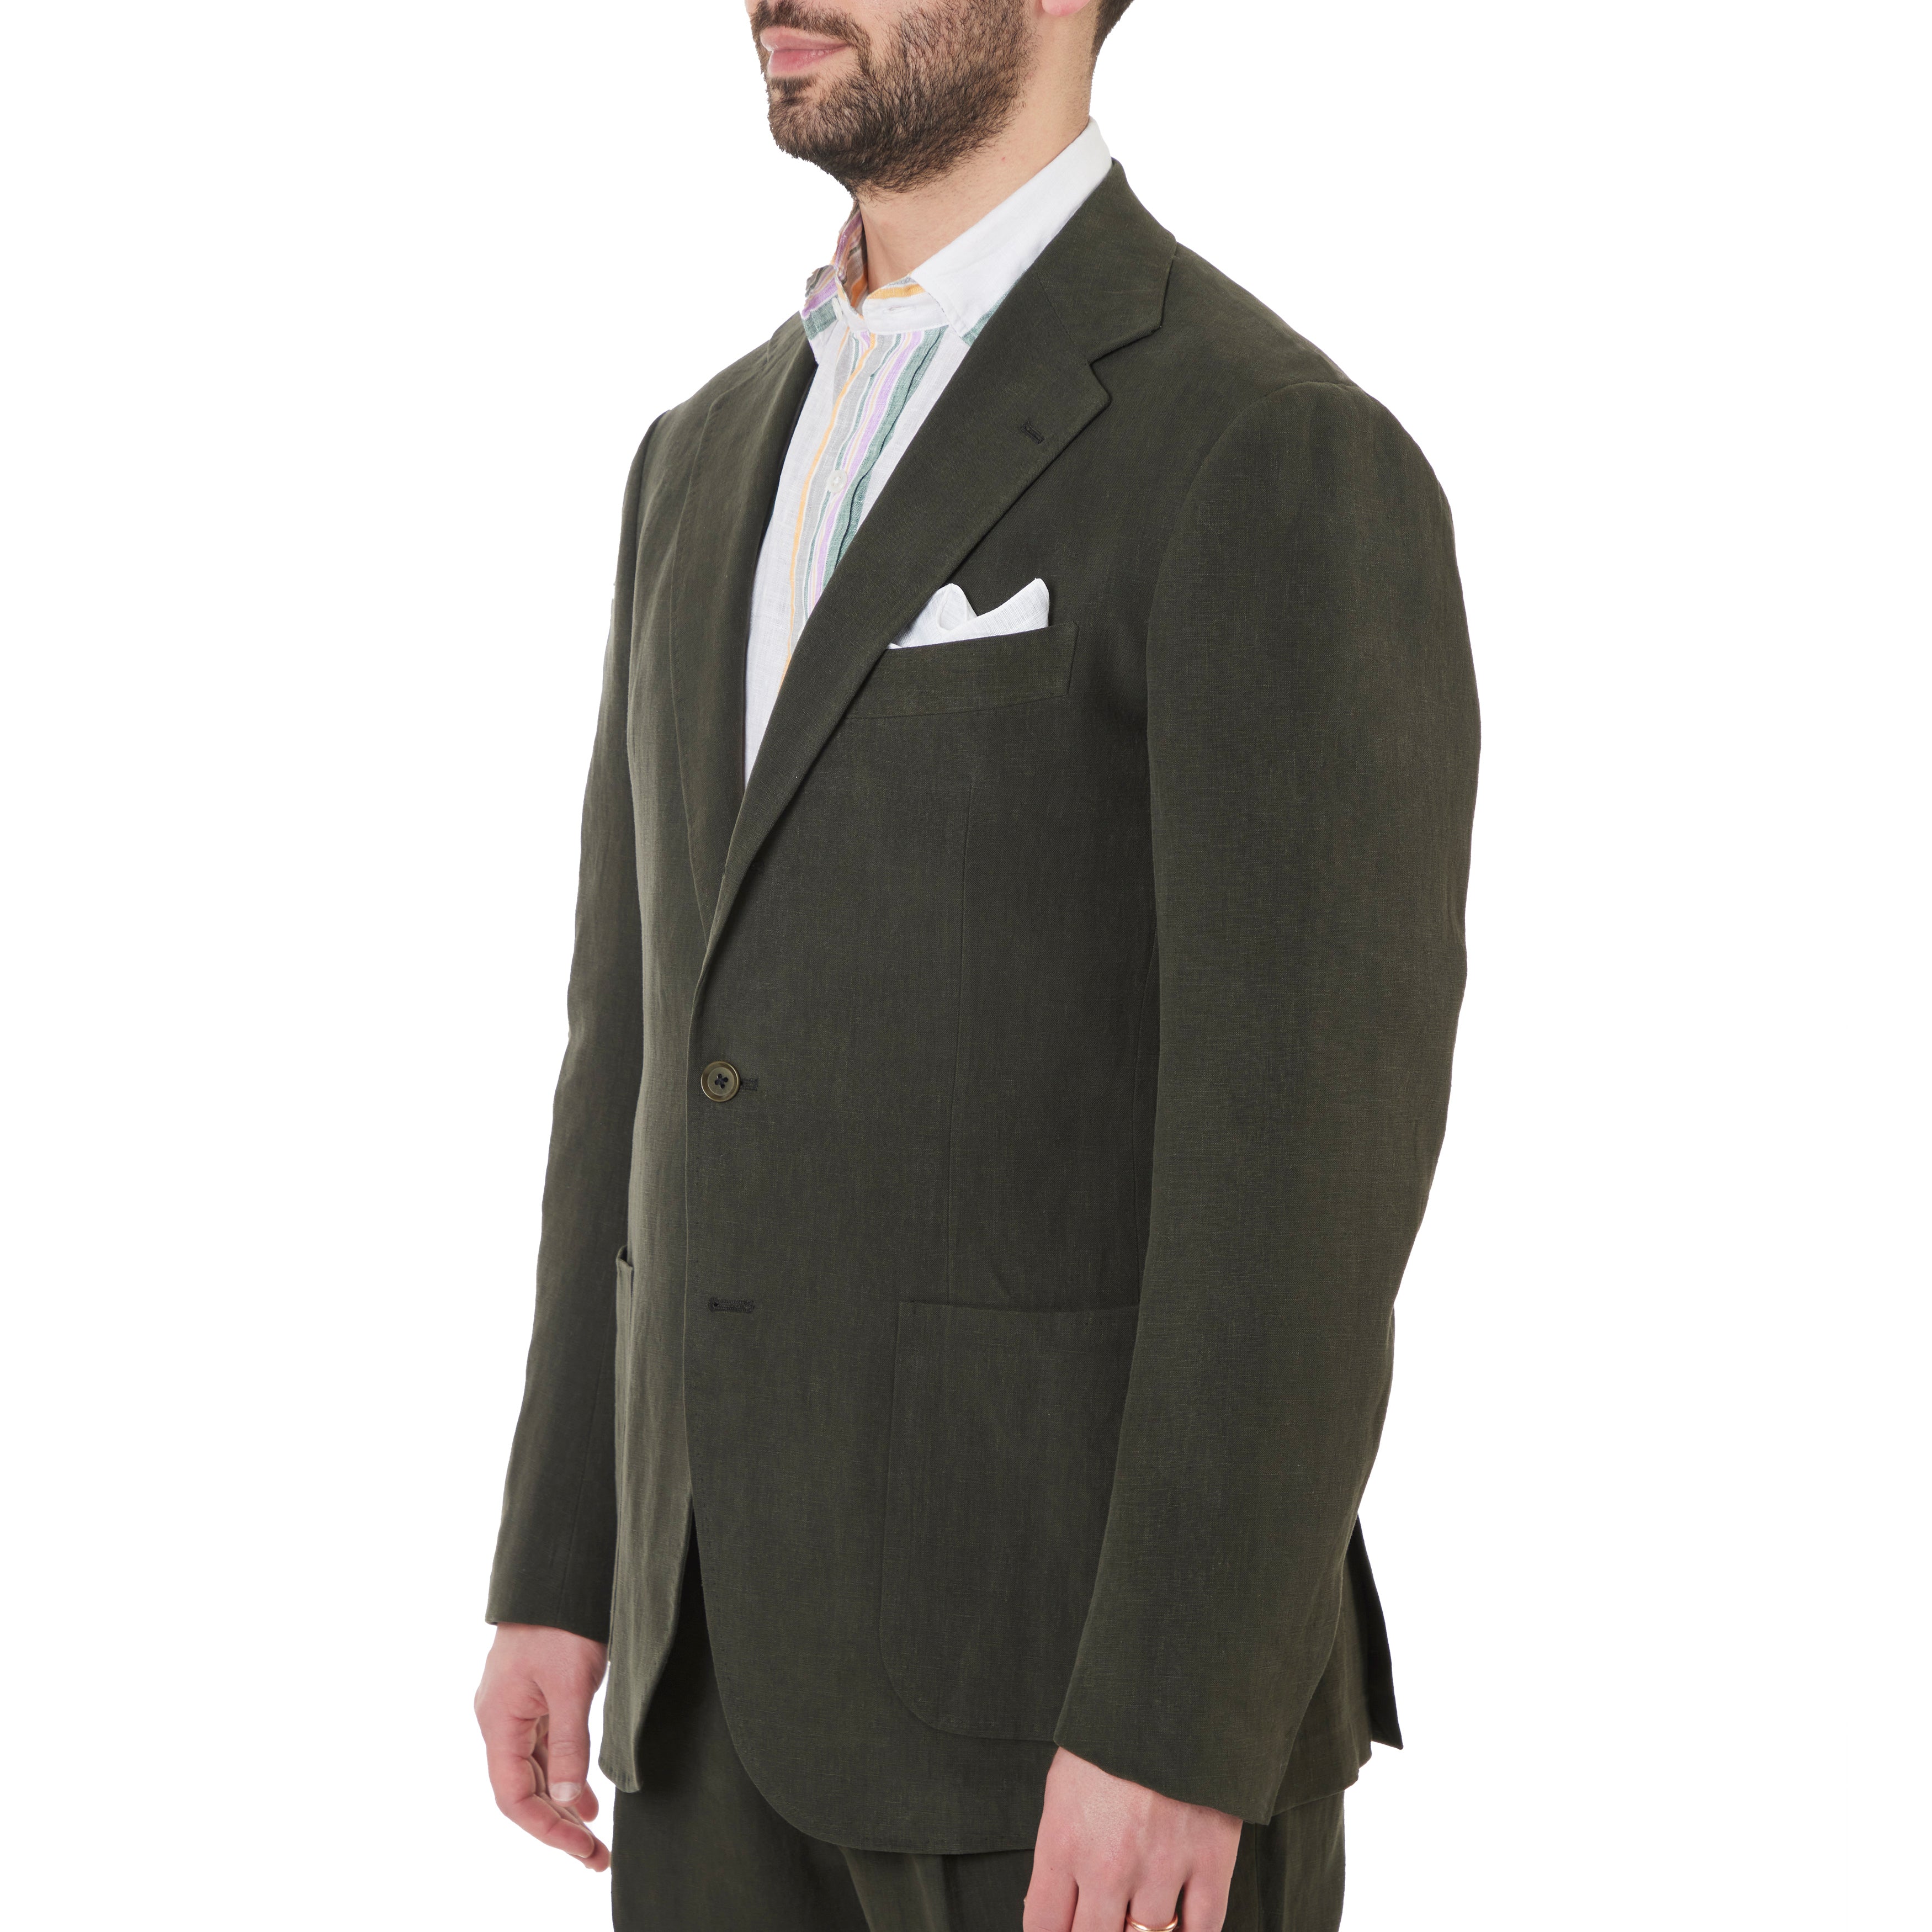 Linen Model 3B Suit